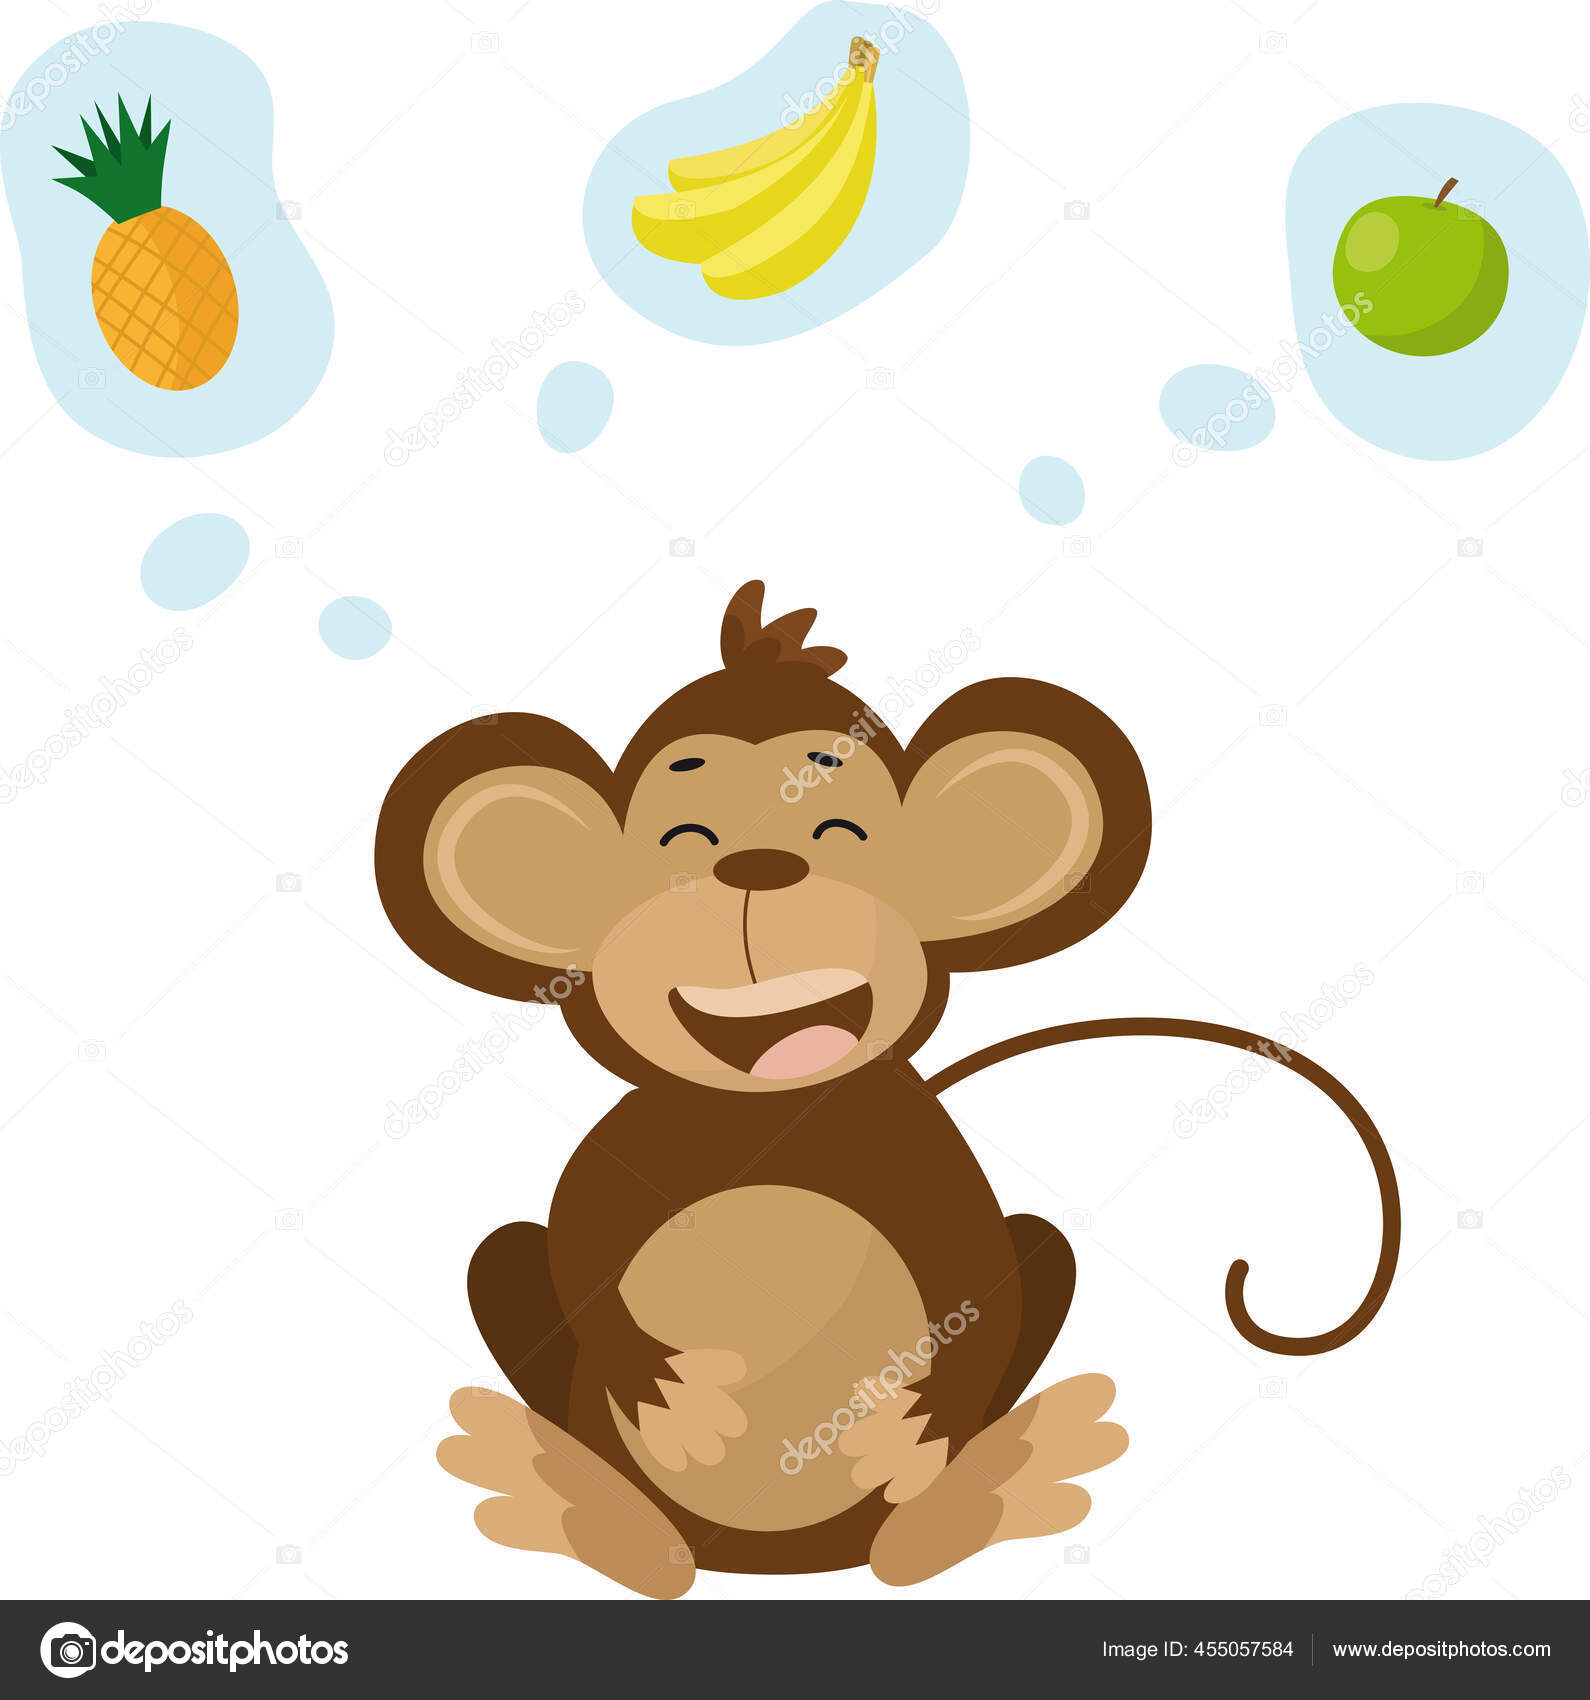 Gambar Monyet Kartun Vektor